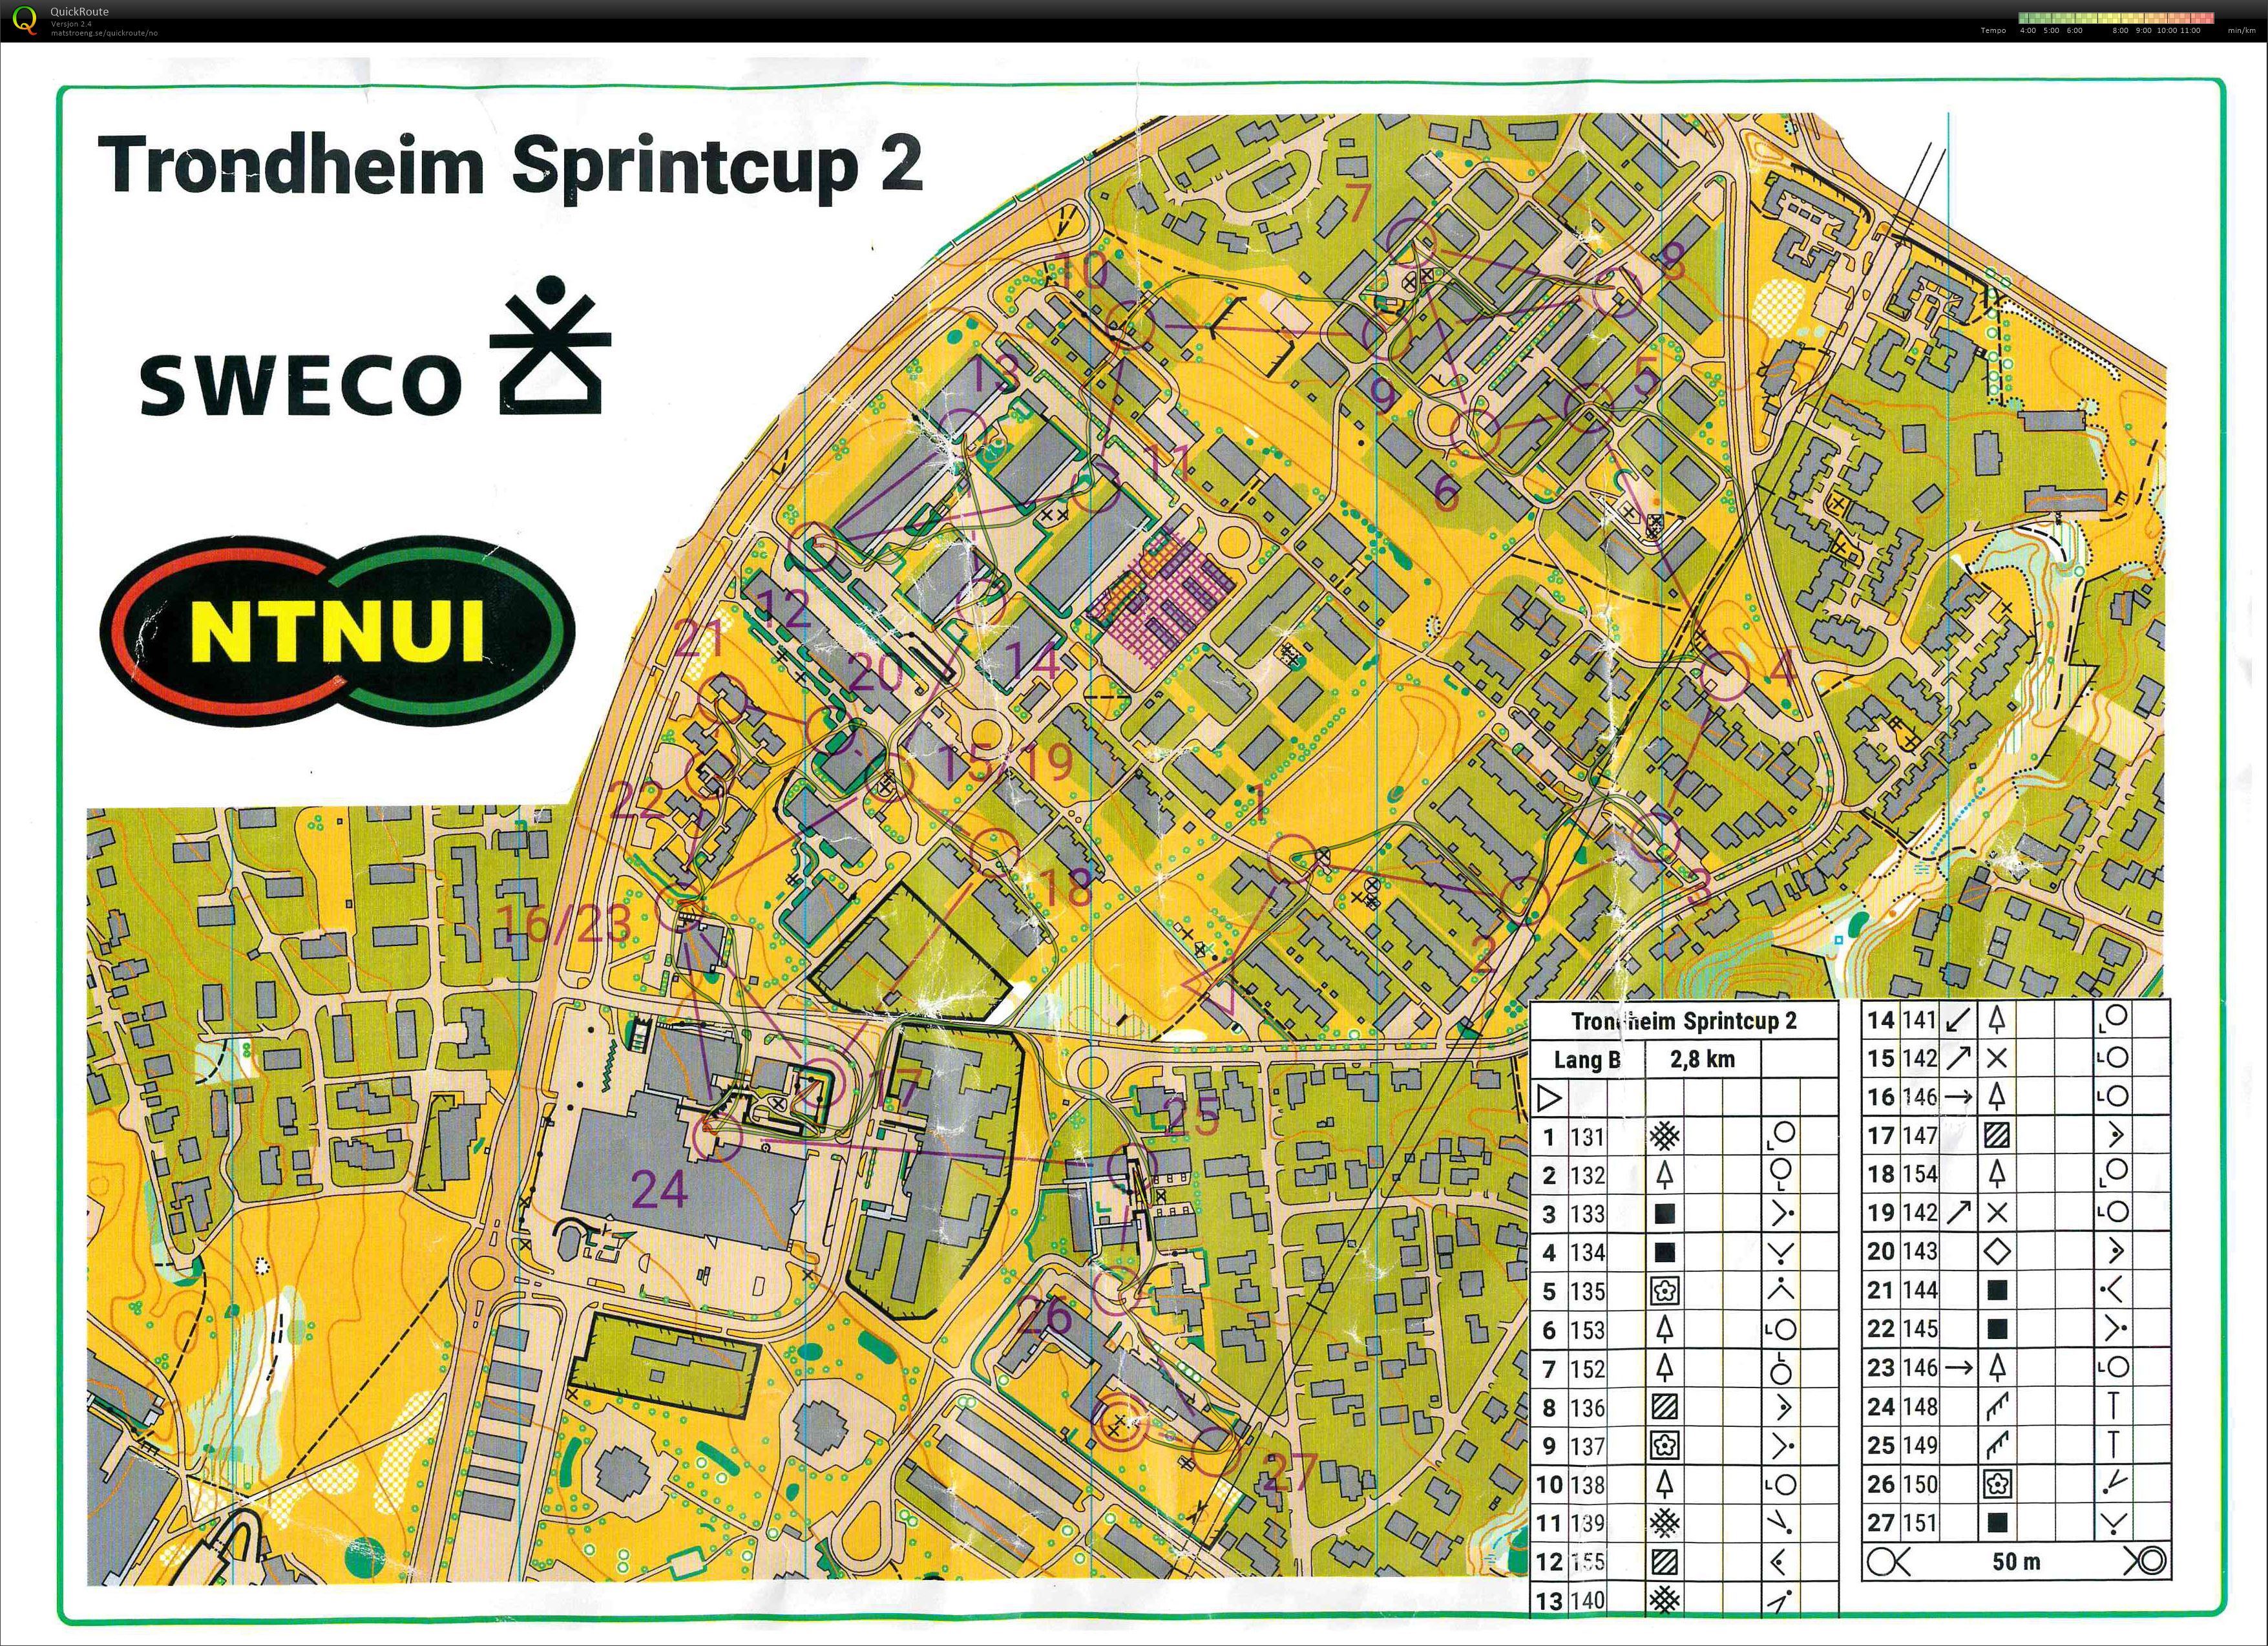 Trondheim Sprintcup # 2, Valentinlyst (21-04-2022)